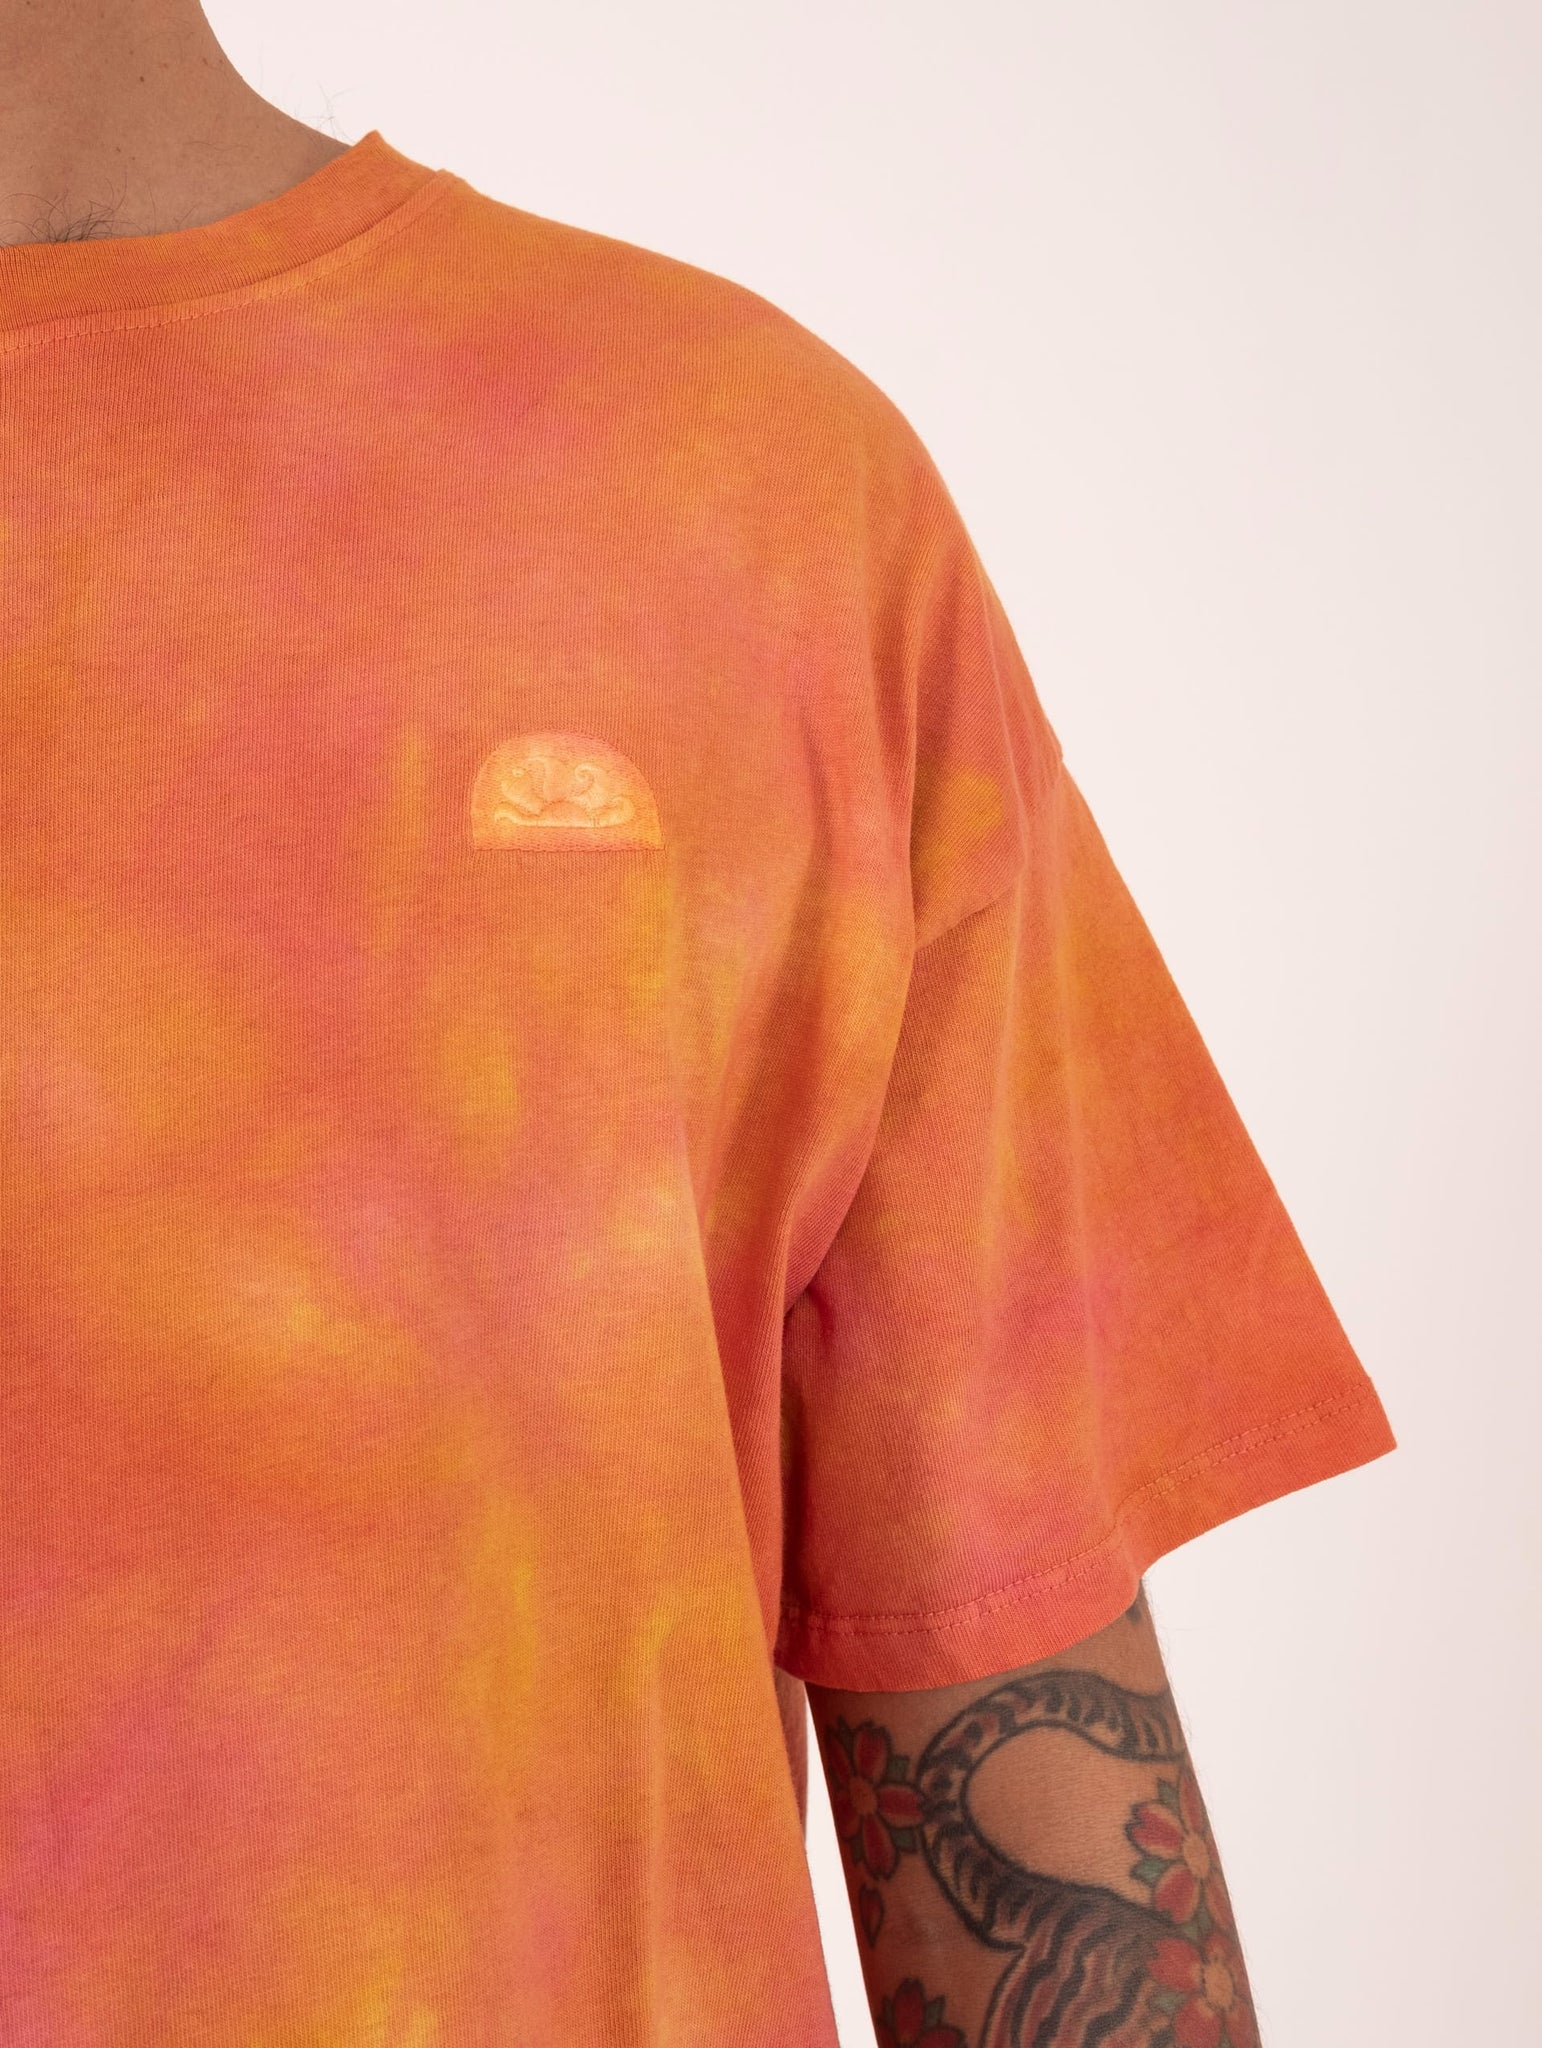 T-Shirt Sundek in Cotone Tie-Dye Arancio